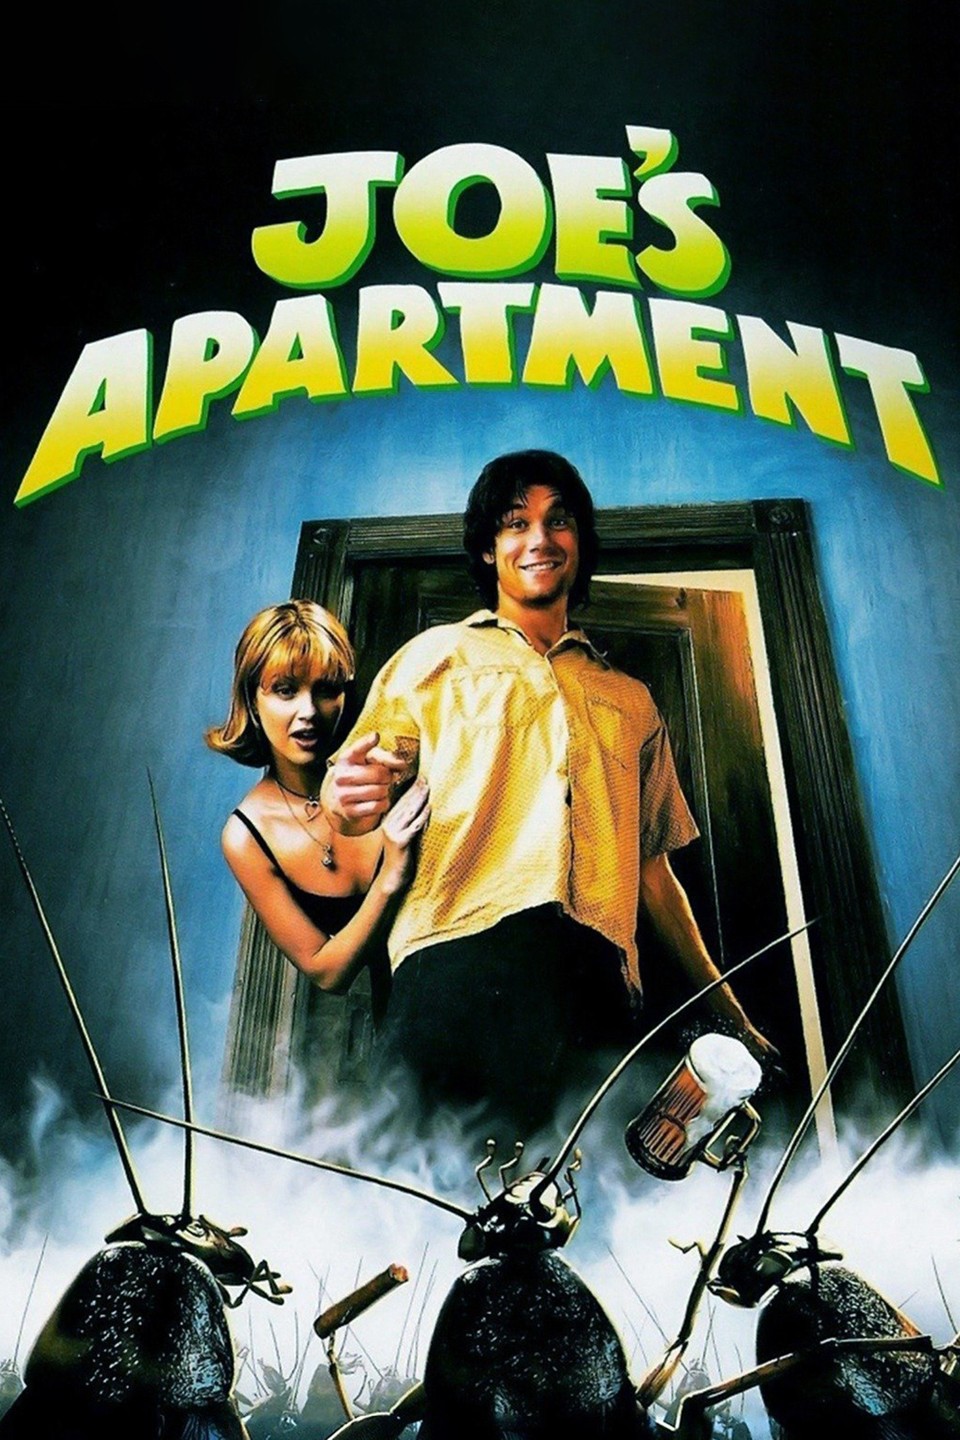 Joe e as Baratas (Joe's Apartment) - 1996 